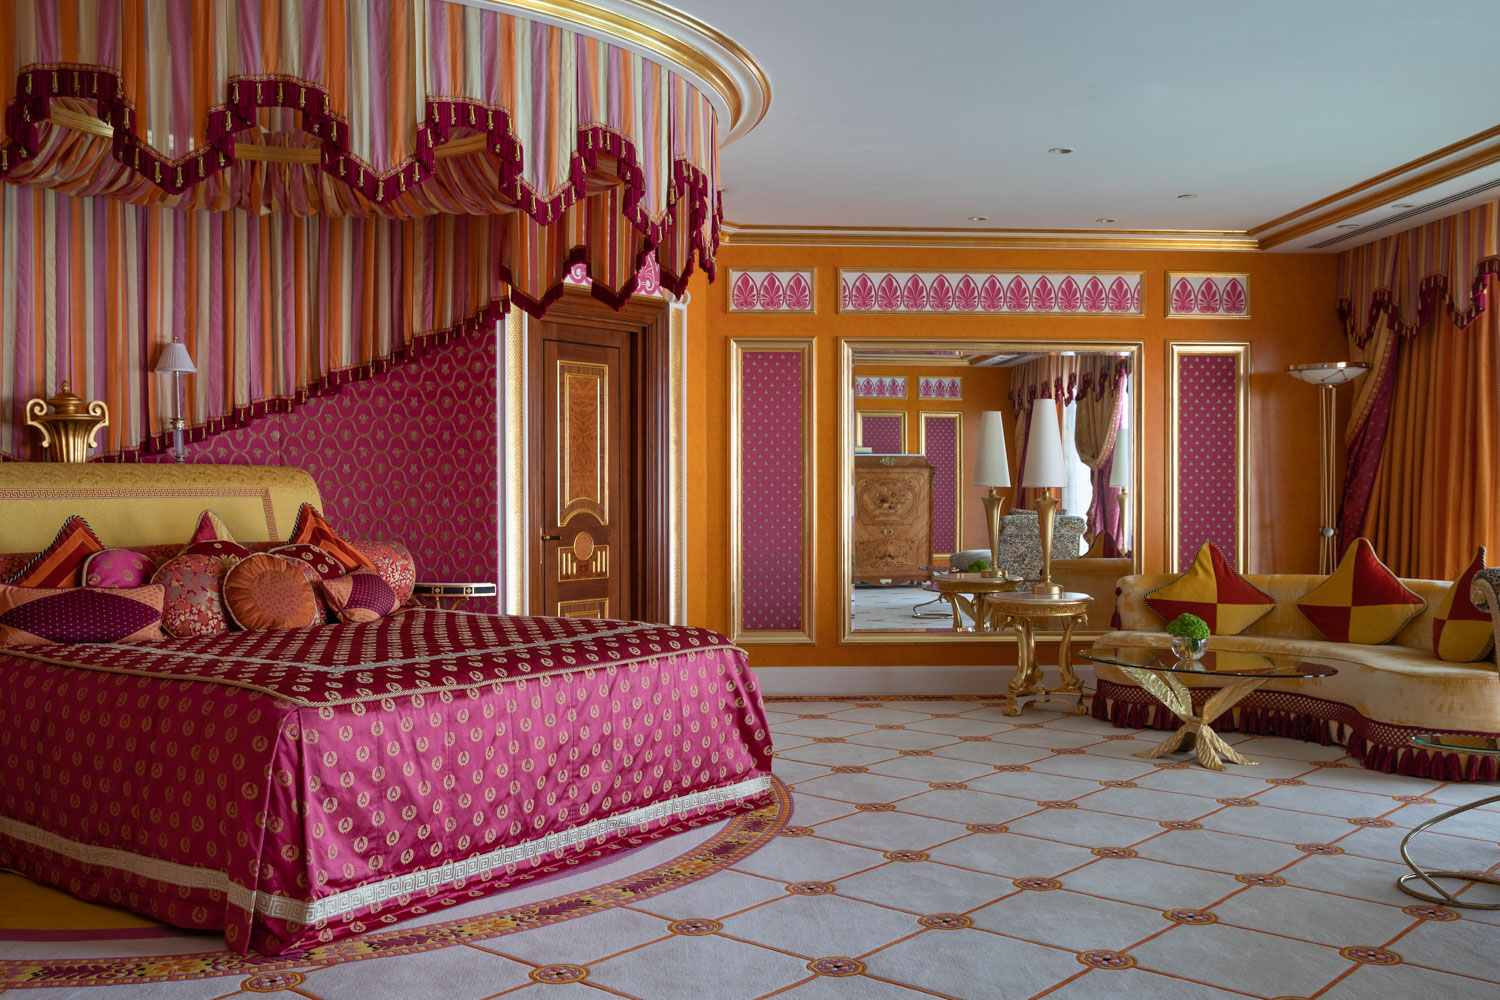 Burj Al Arab hotel royal suite 7